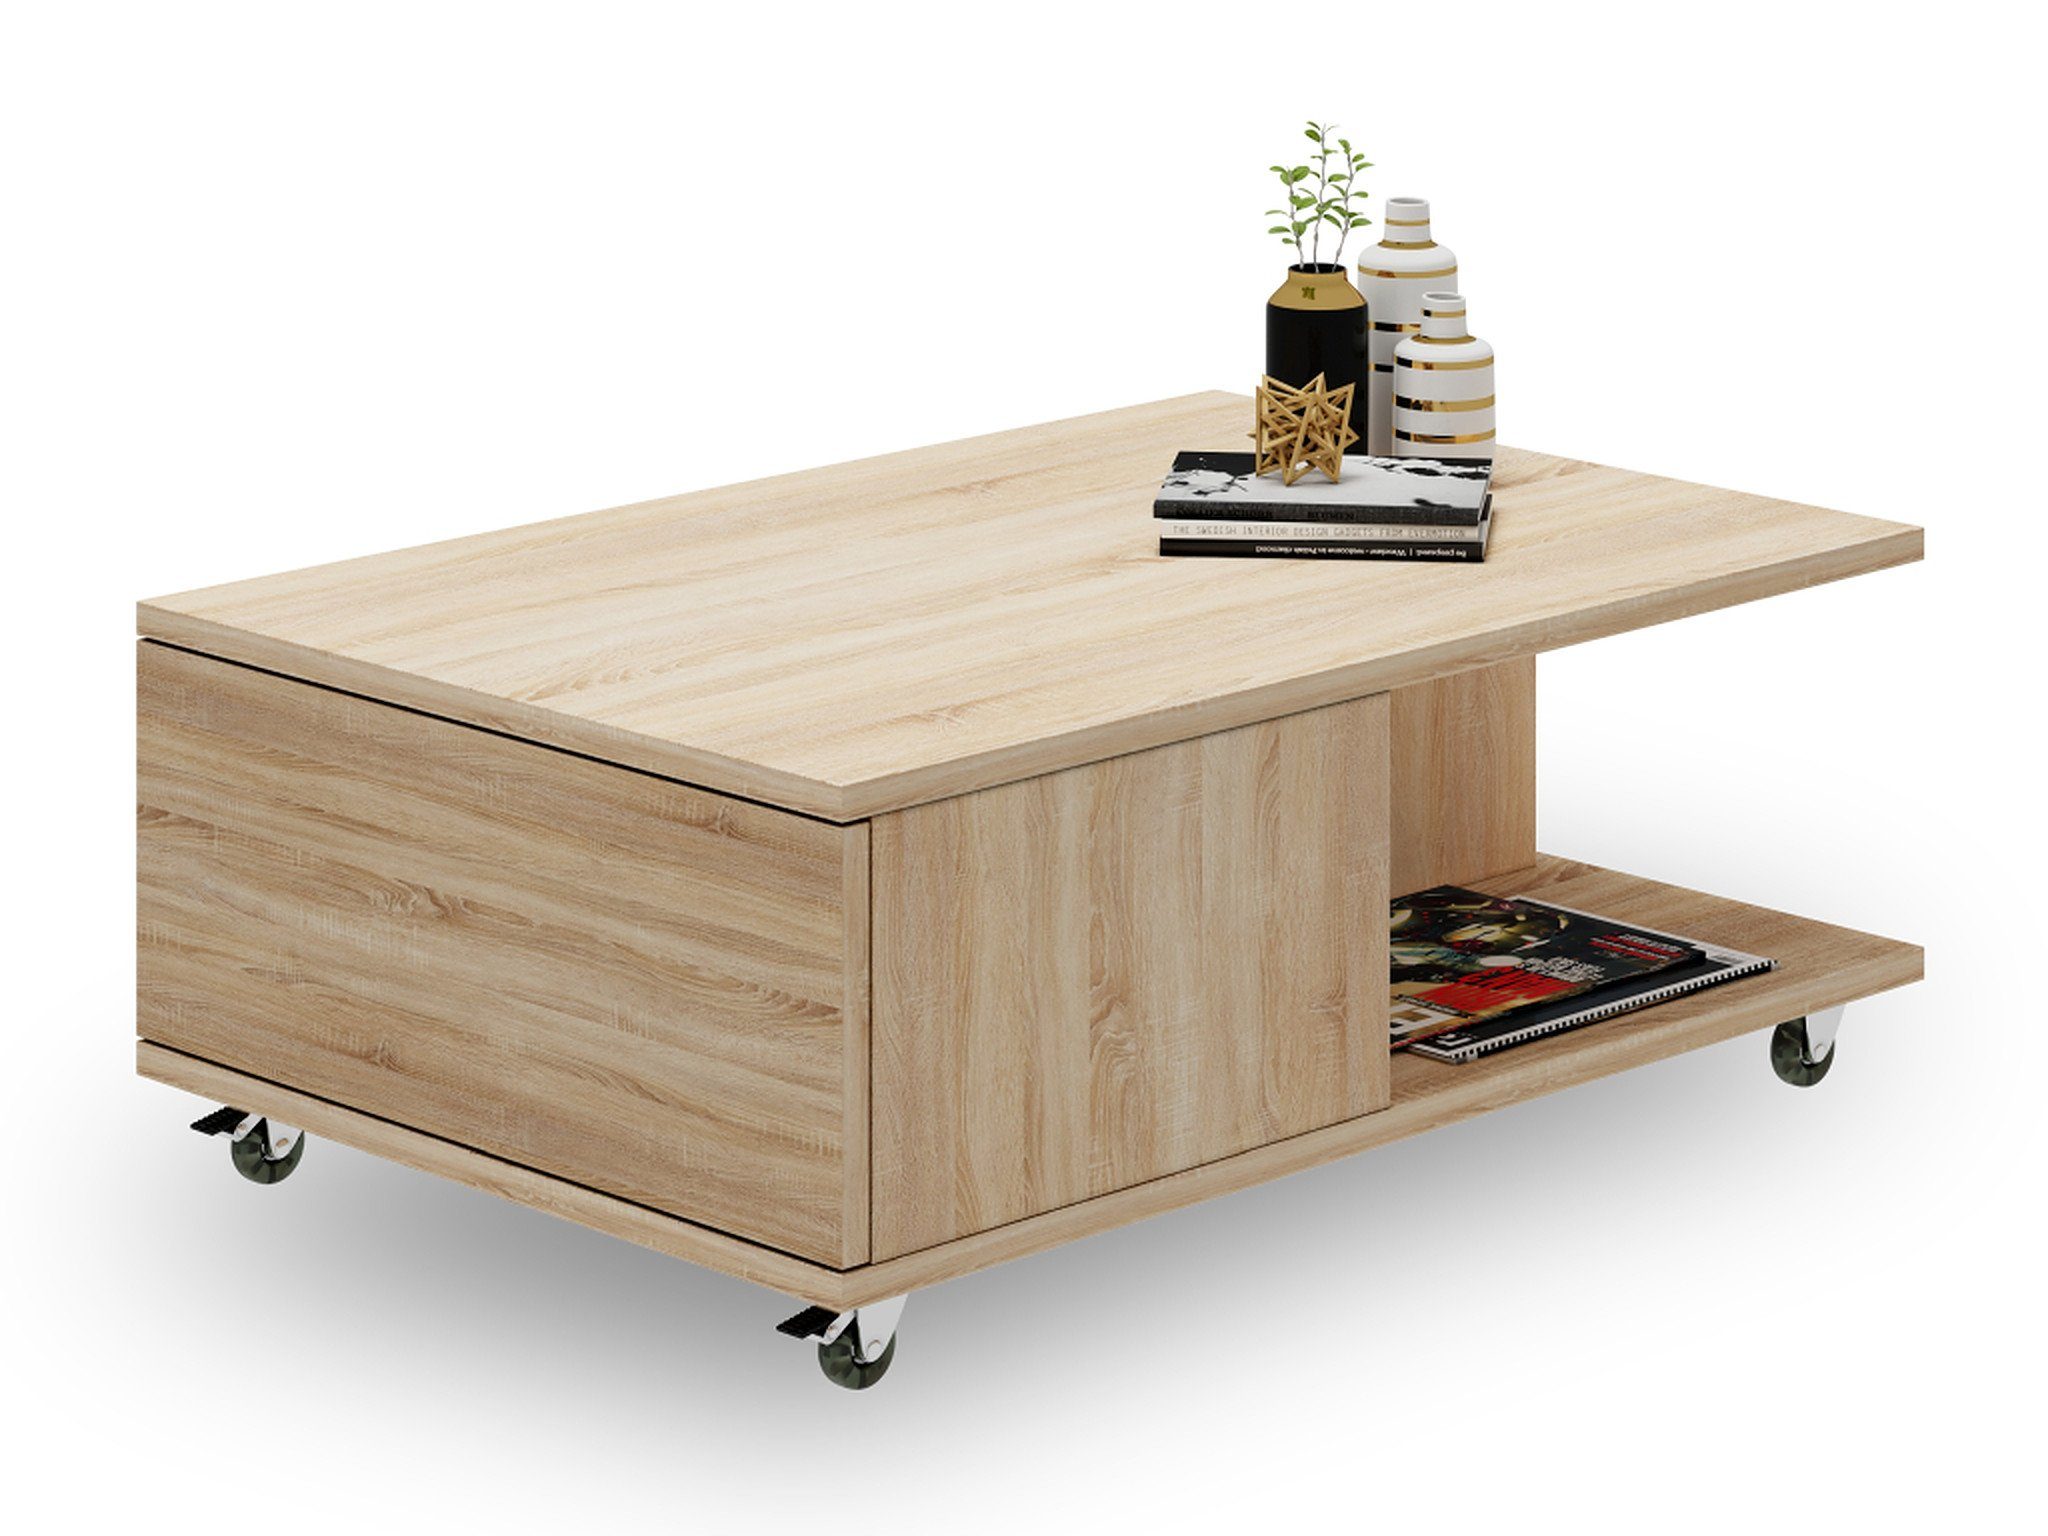 Mazzoni Couchtisch Design Tisch Vienna Rollen Wohnzimmertisch Sonoma 90x60x38cm Eiche mit